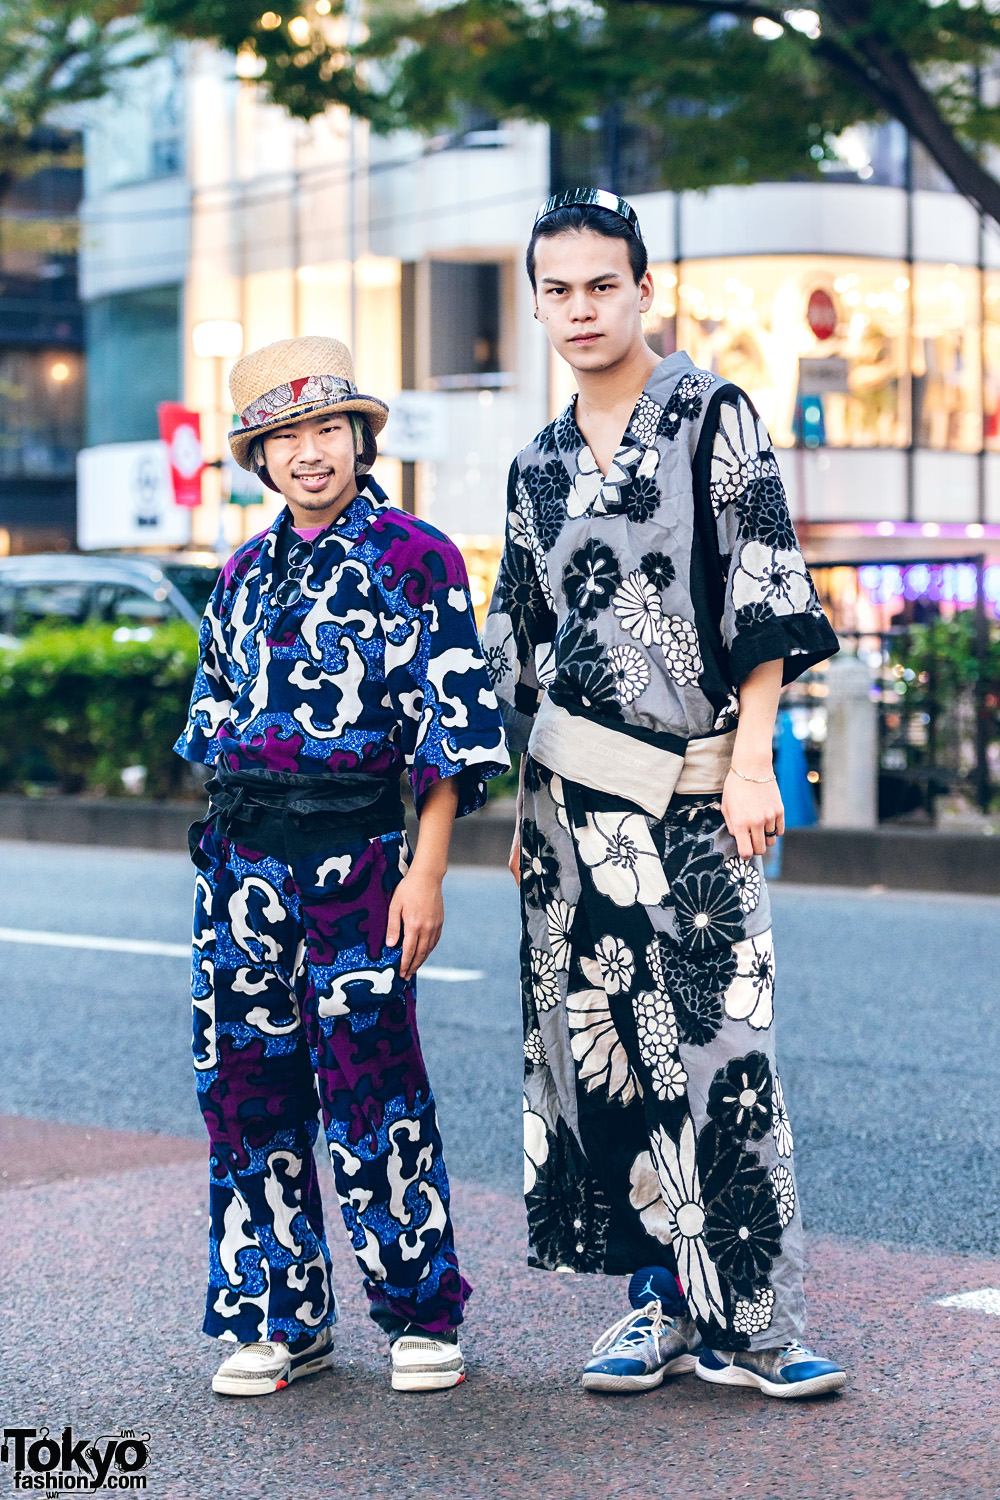 Japanese Dancers in Printed Kimono Streetwear Styles w/ Sou Sou Graphic Print & Floral Print Kimono Sets, Nike Sneakers, Straw Hat & Jewelry